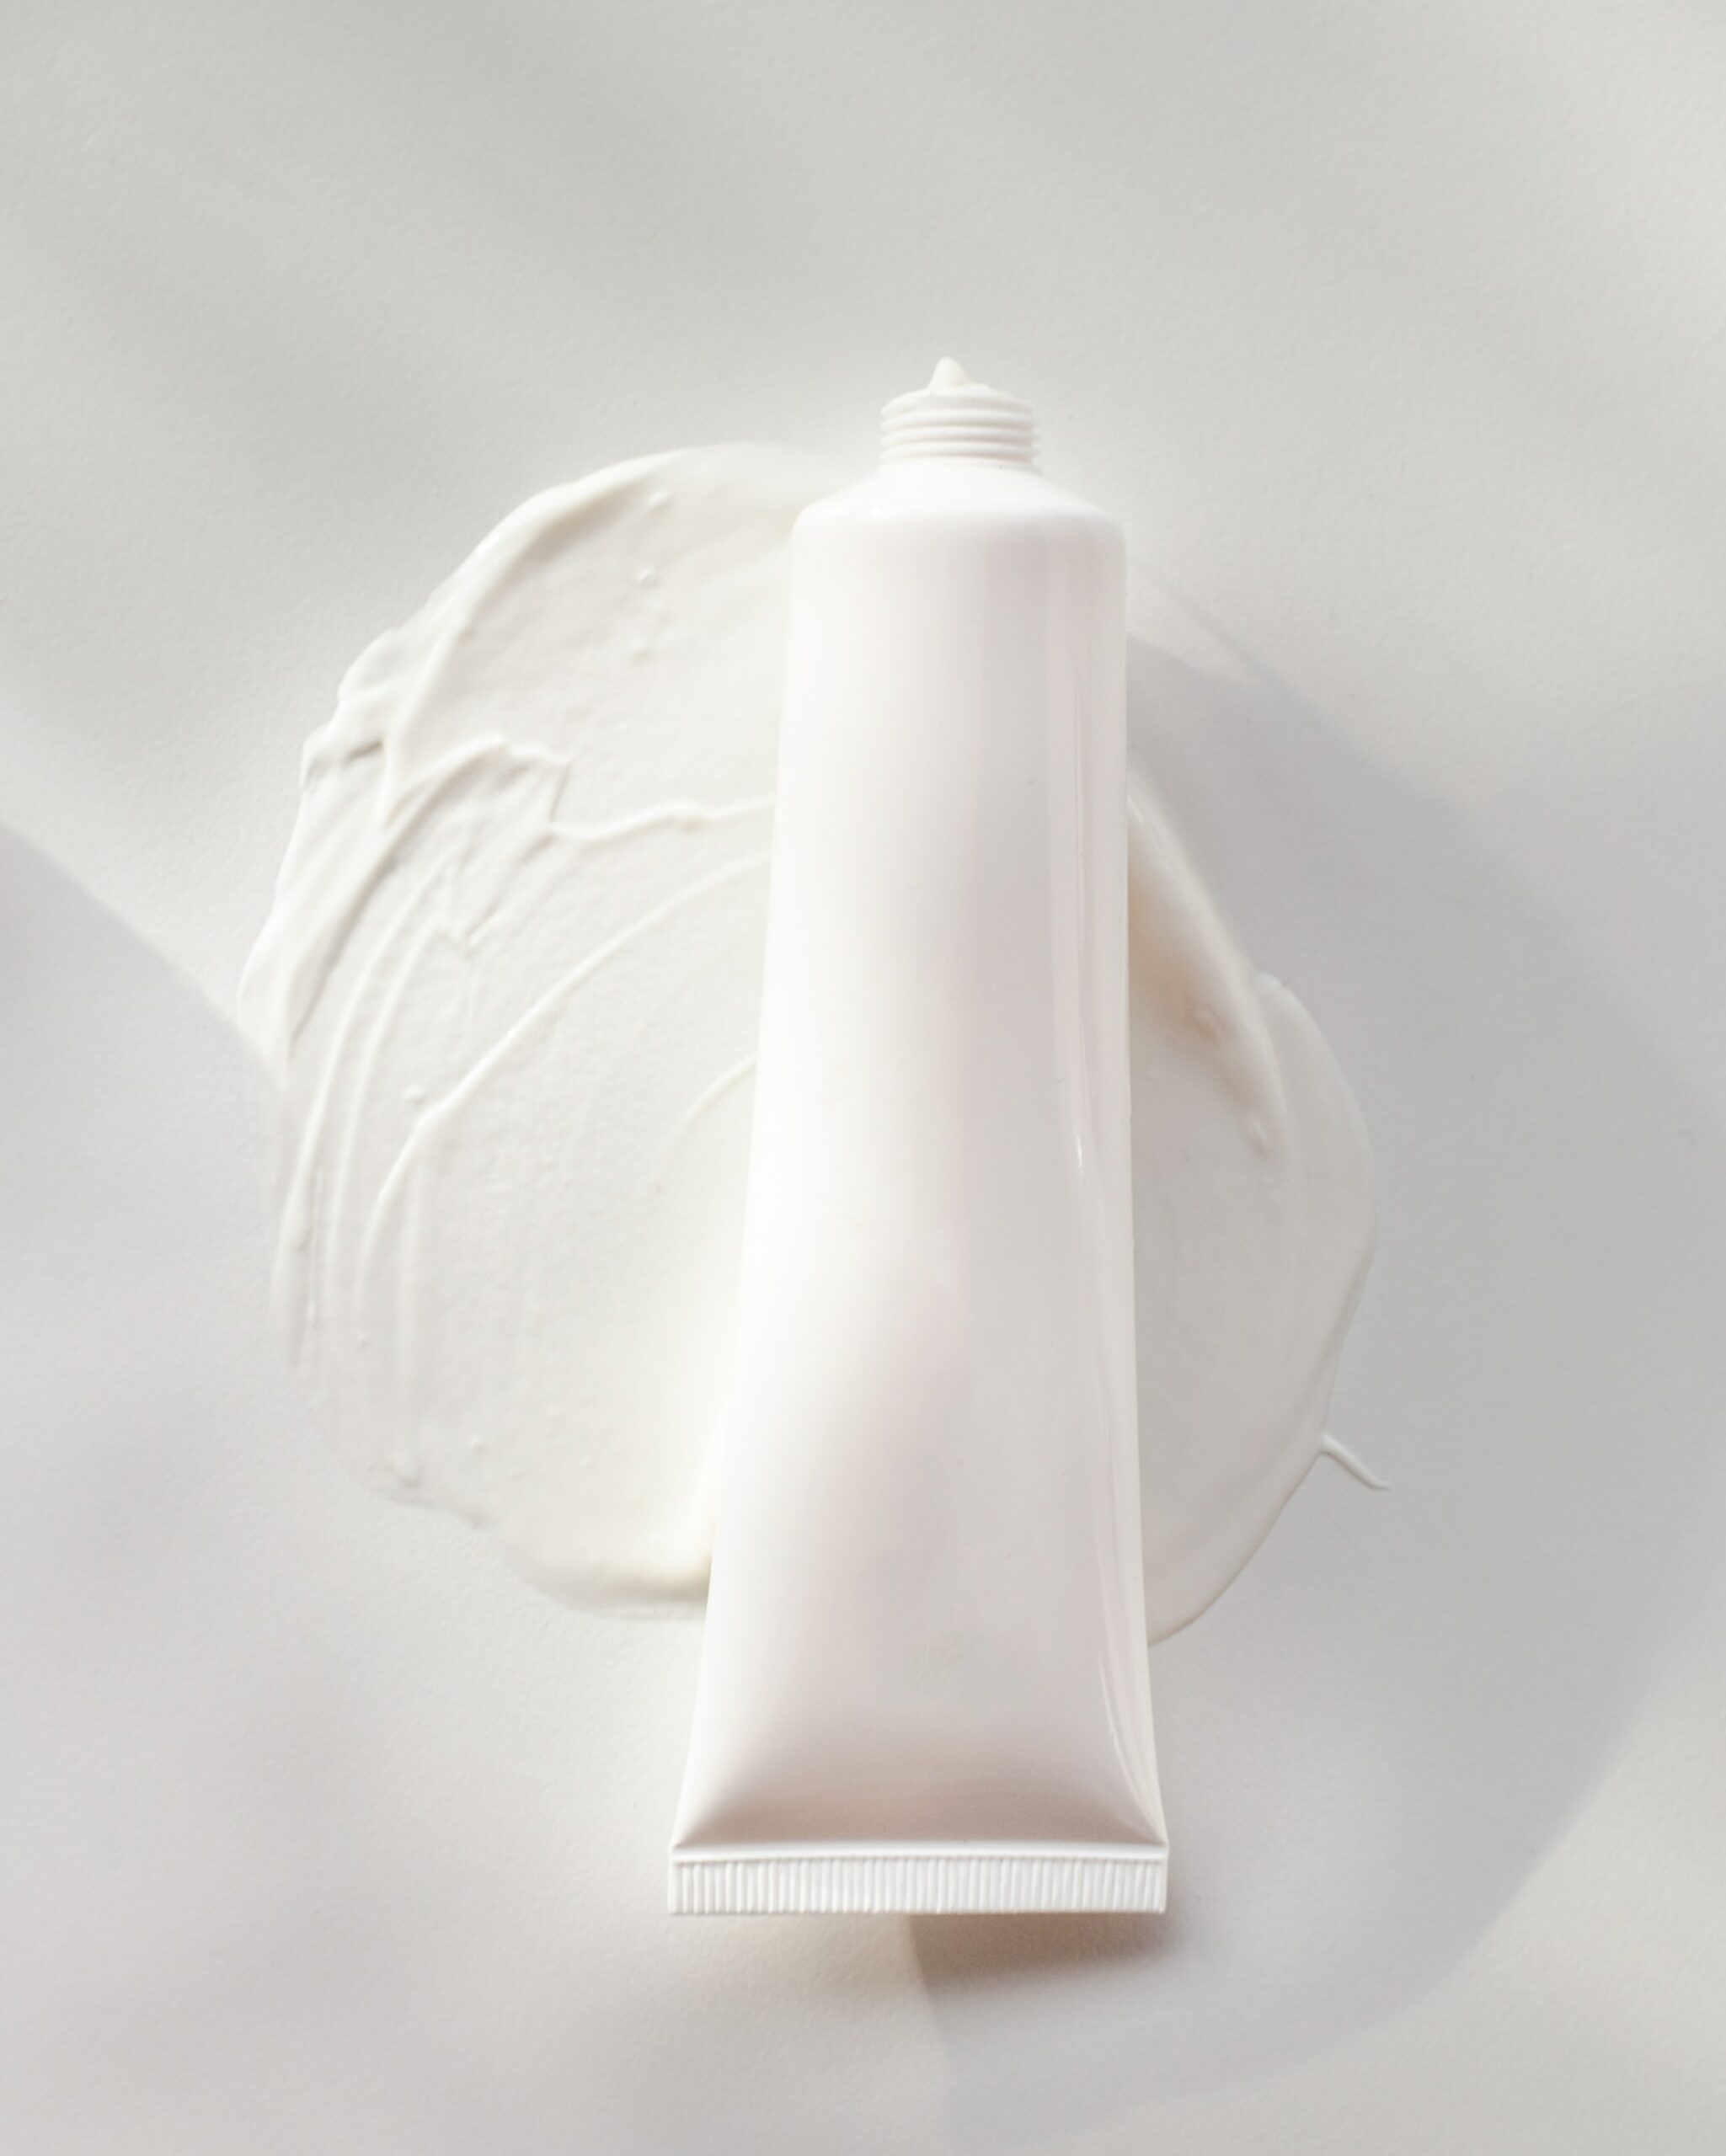 6 BEST Korean Sunscreens for Oily Skin Types